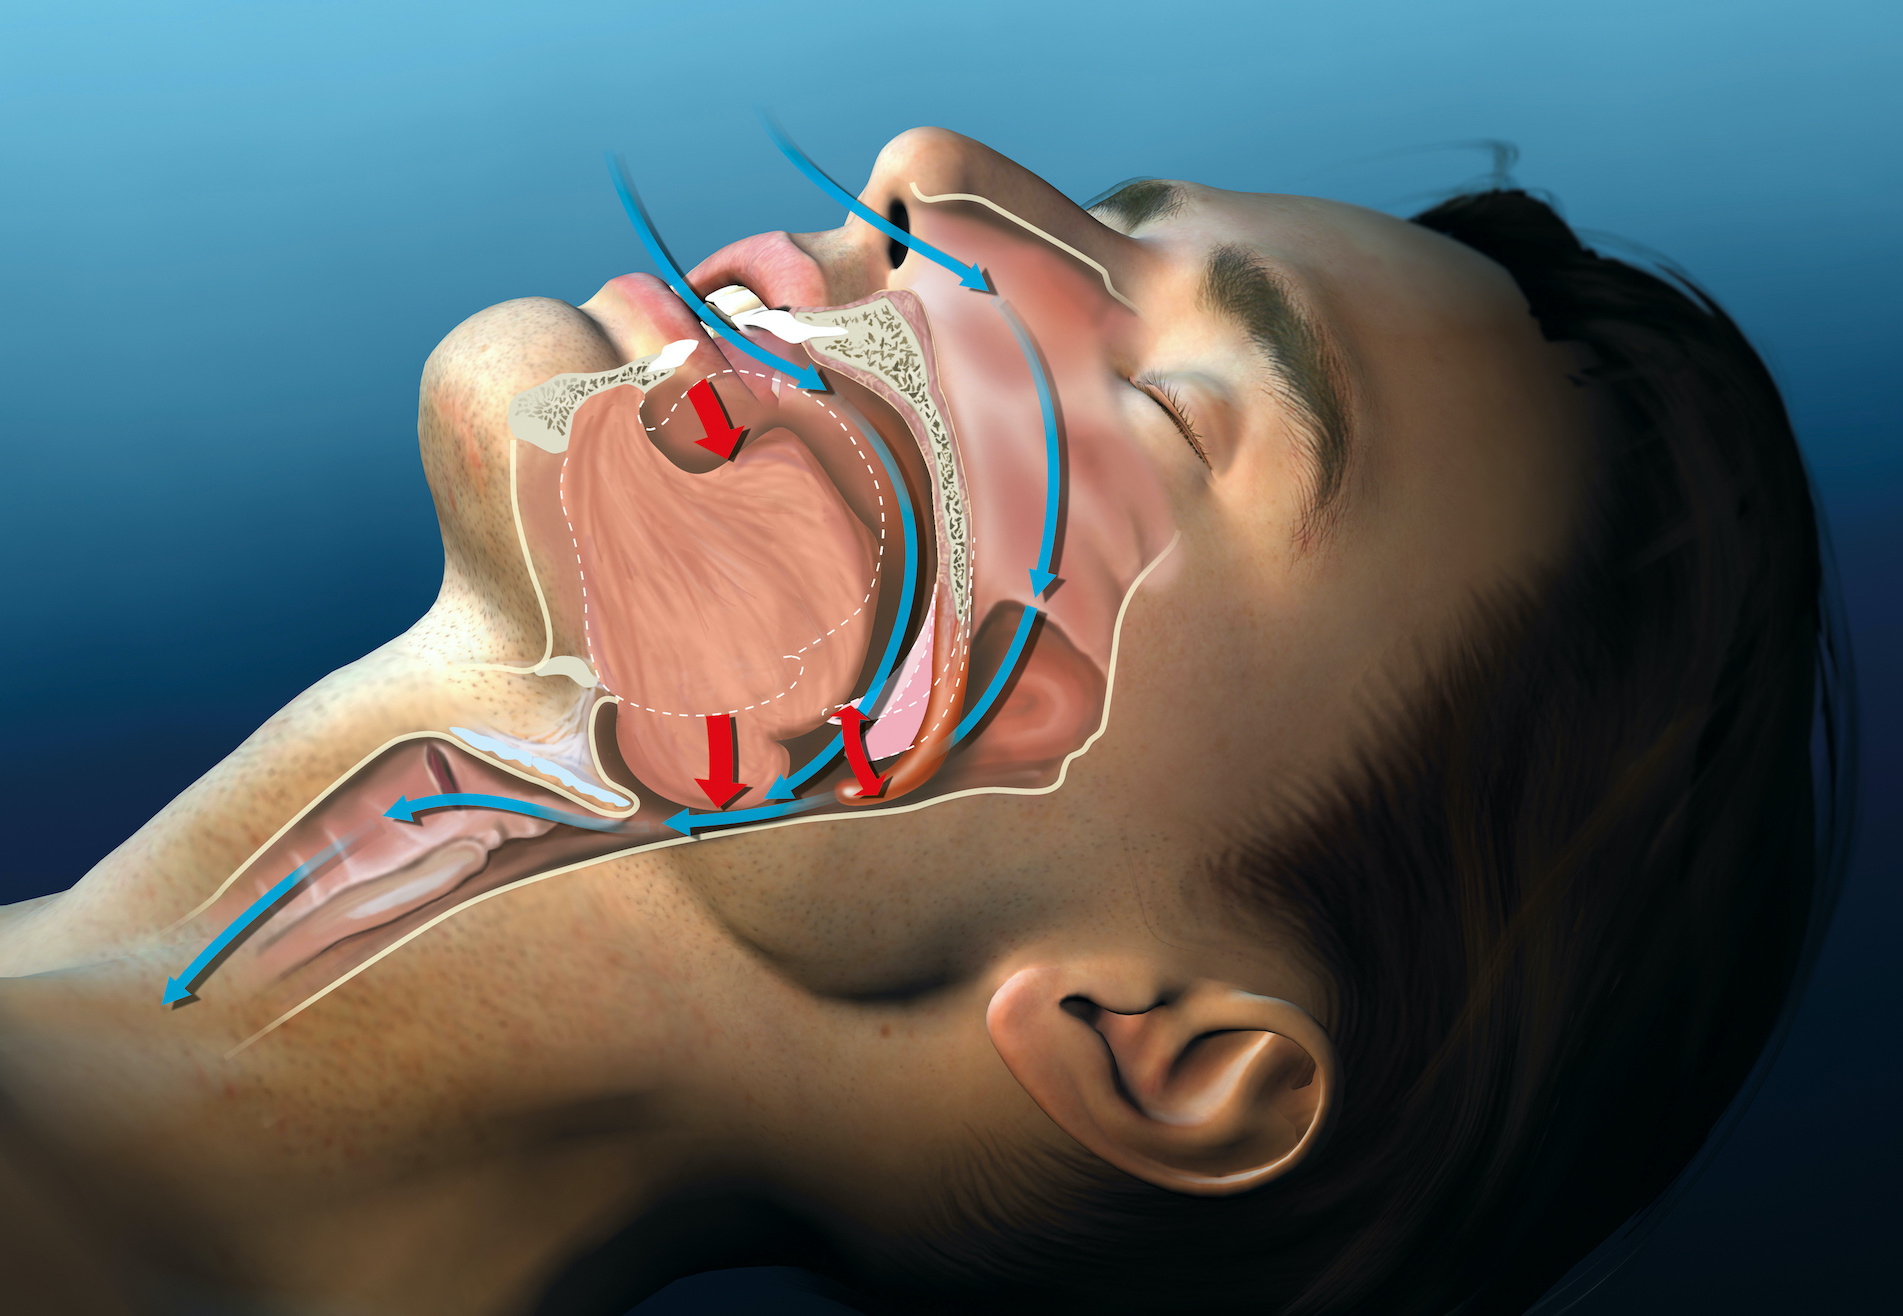 Anatomy illustration of man sleep snoring